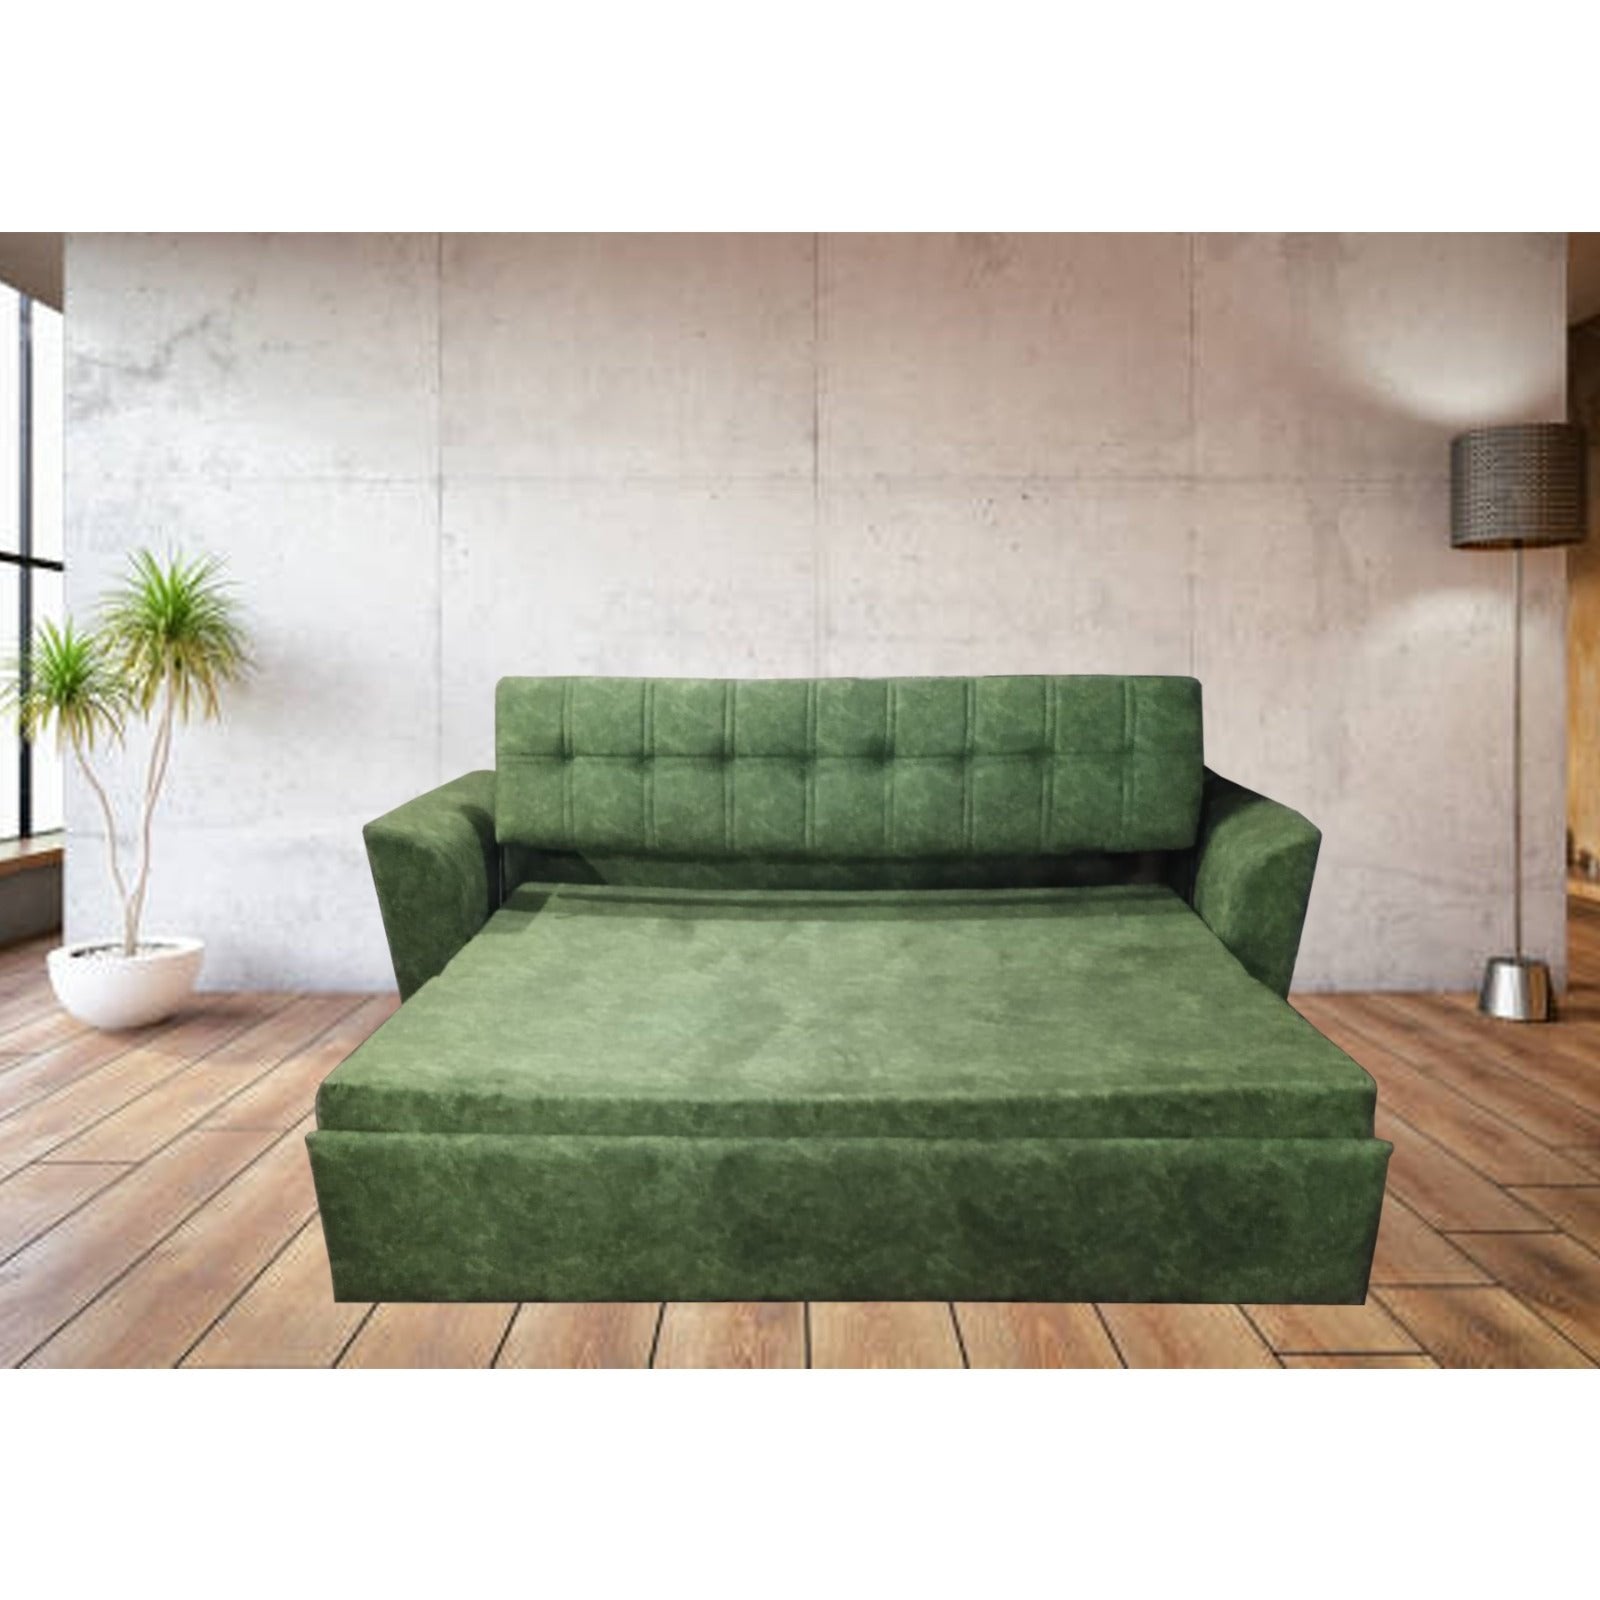 SM-GEMS C ;SOFA CUM BED FULL UPHOLSTERED Mobel Furniture